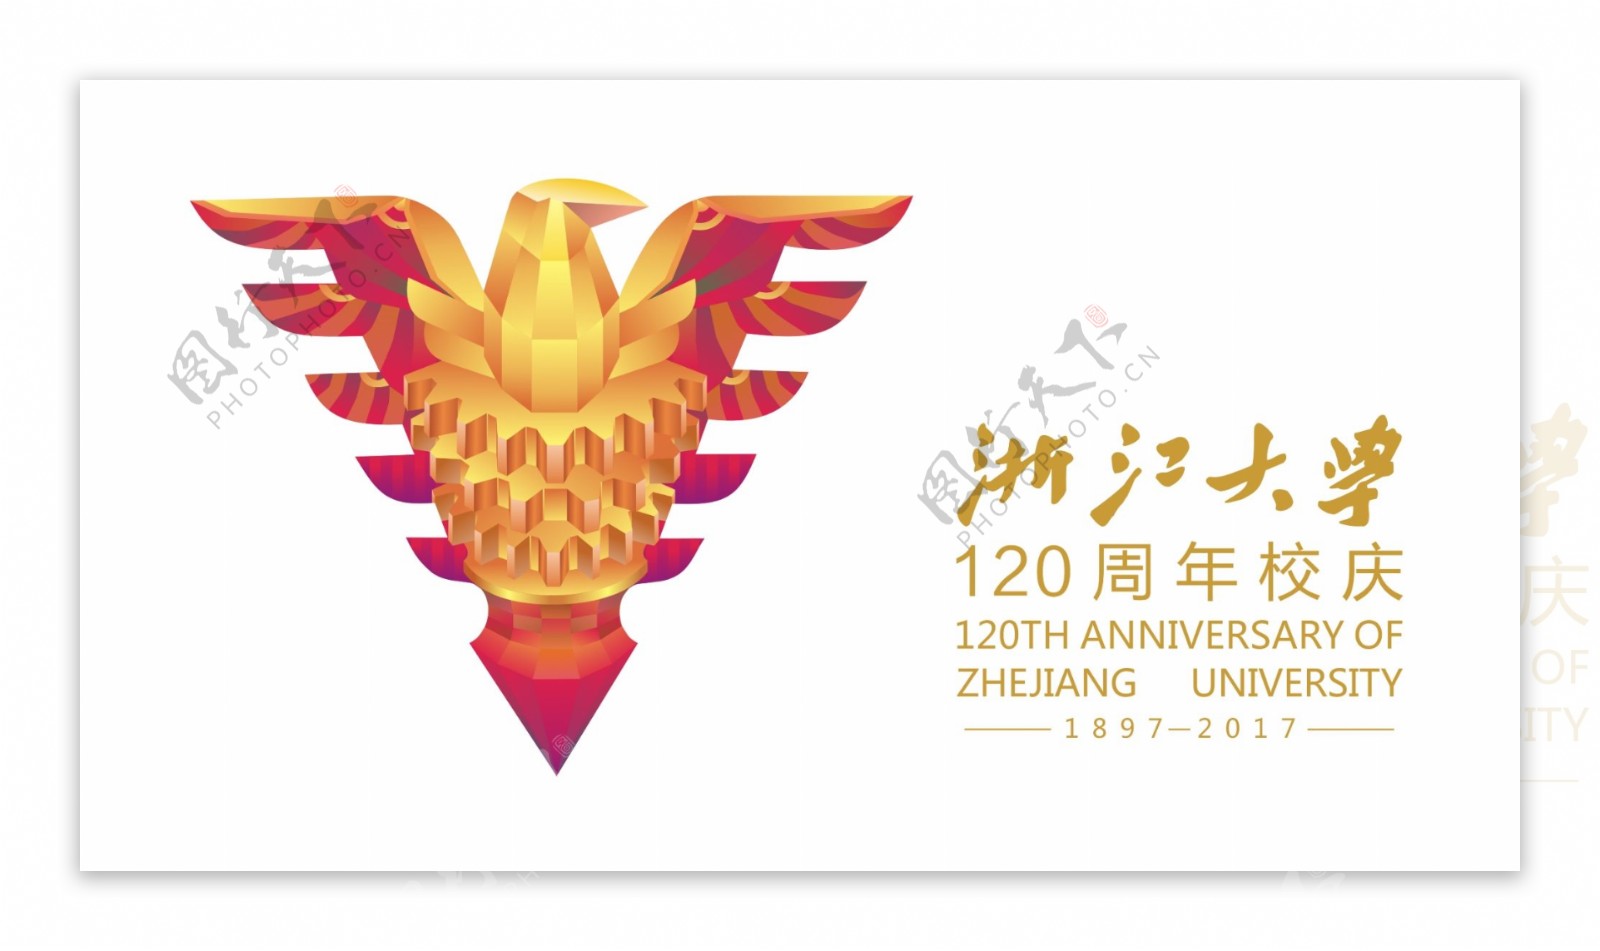 浙江大学120周年校庆logo